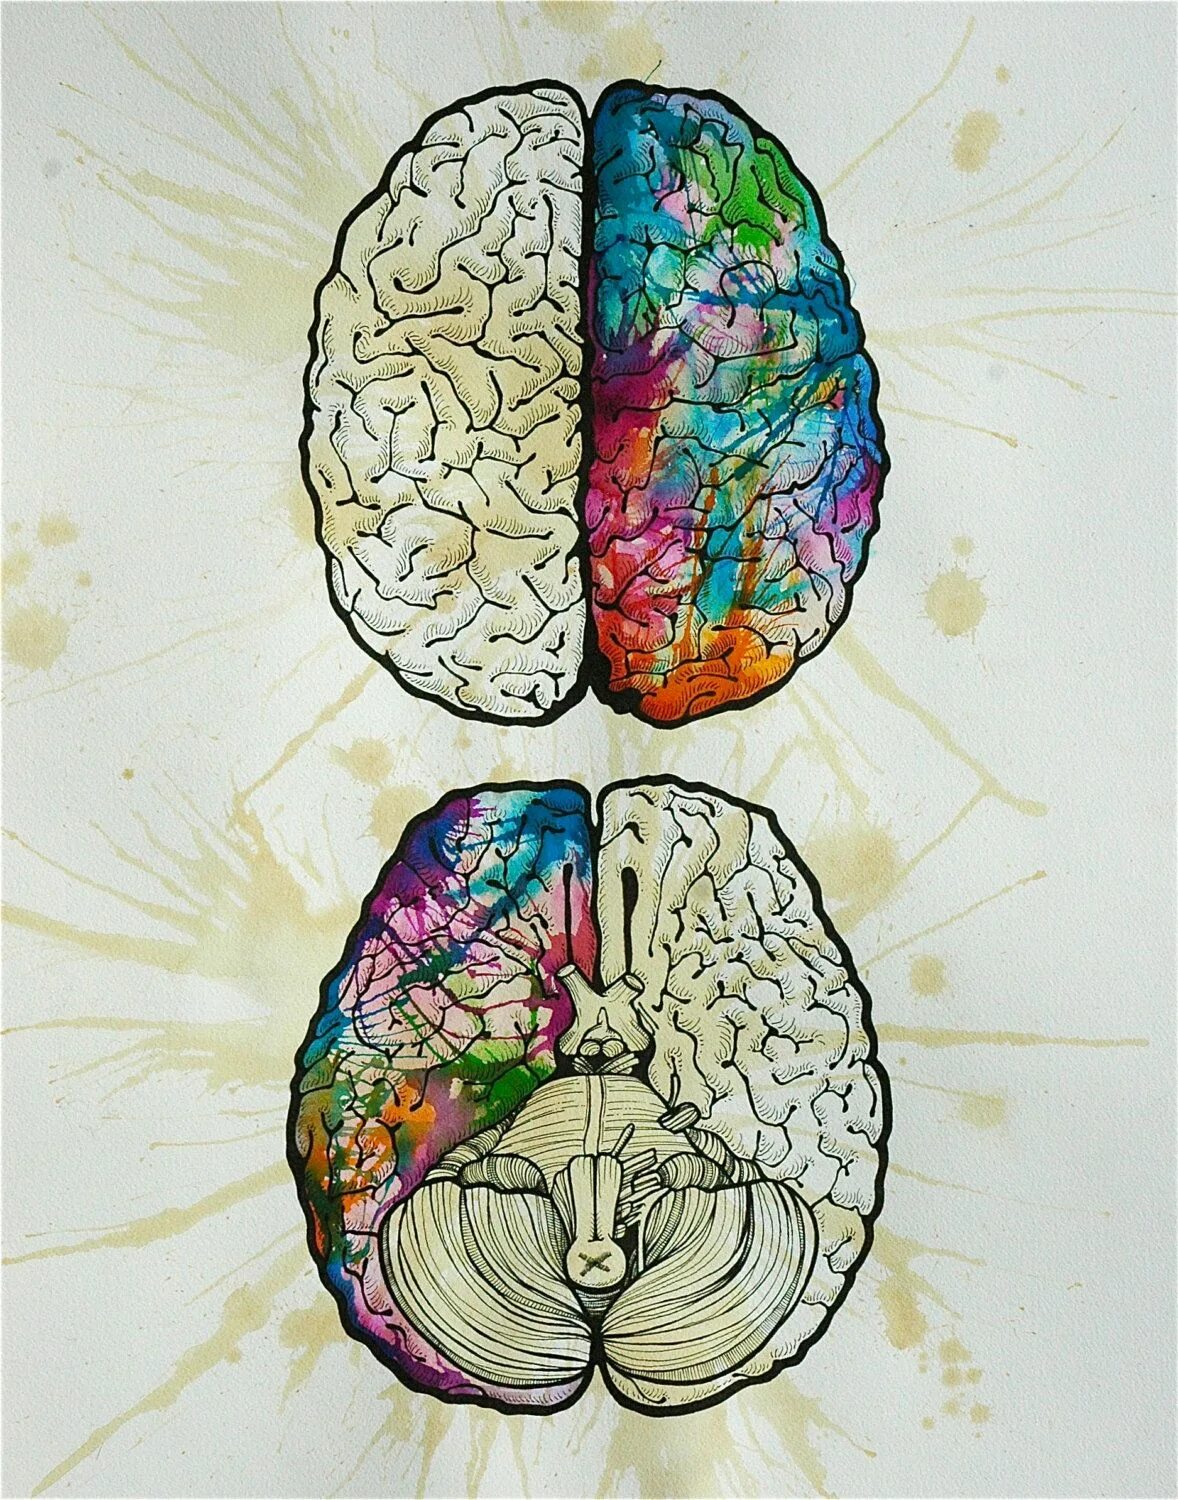 Полушария и руки. Полушария мозга. Мозг рисунок. Асимметрия полушарий головного мозга. Функциональная асимметрия полушарий мозга.